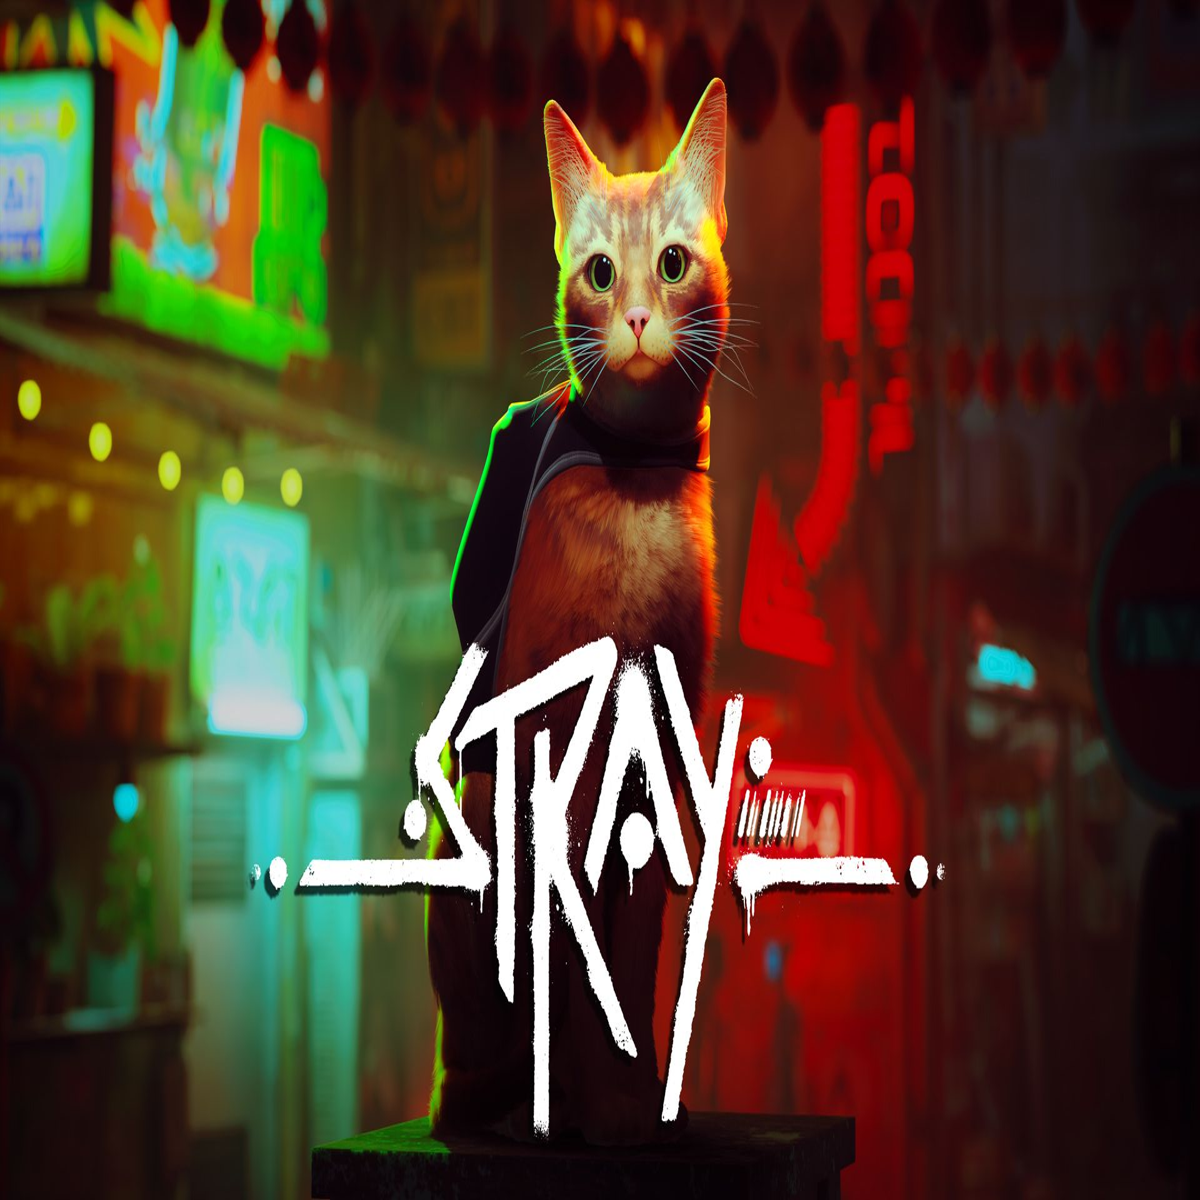 stray cats logo